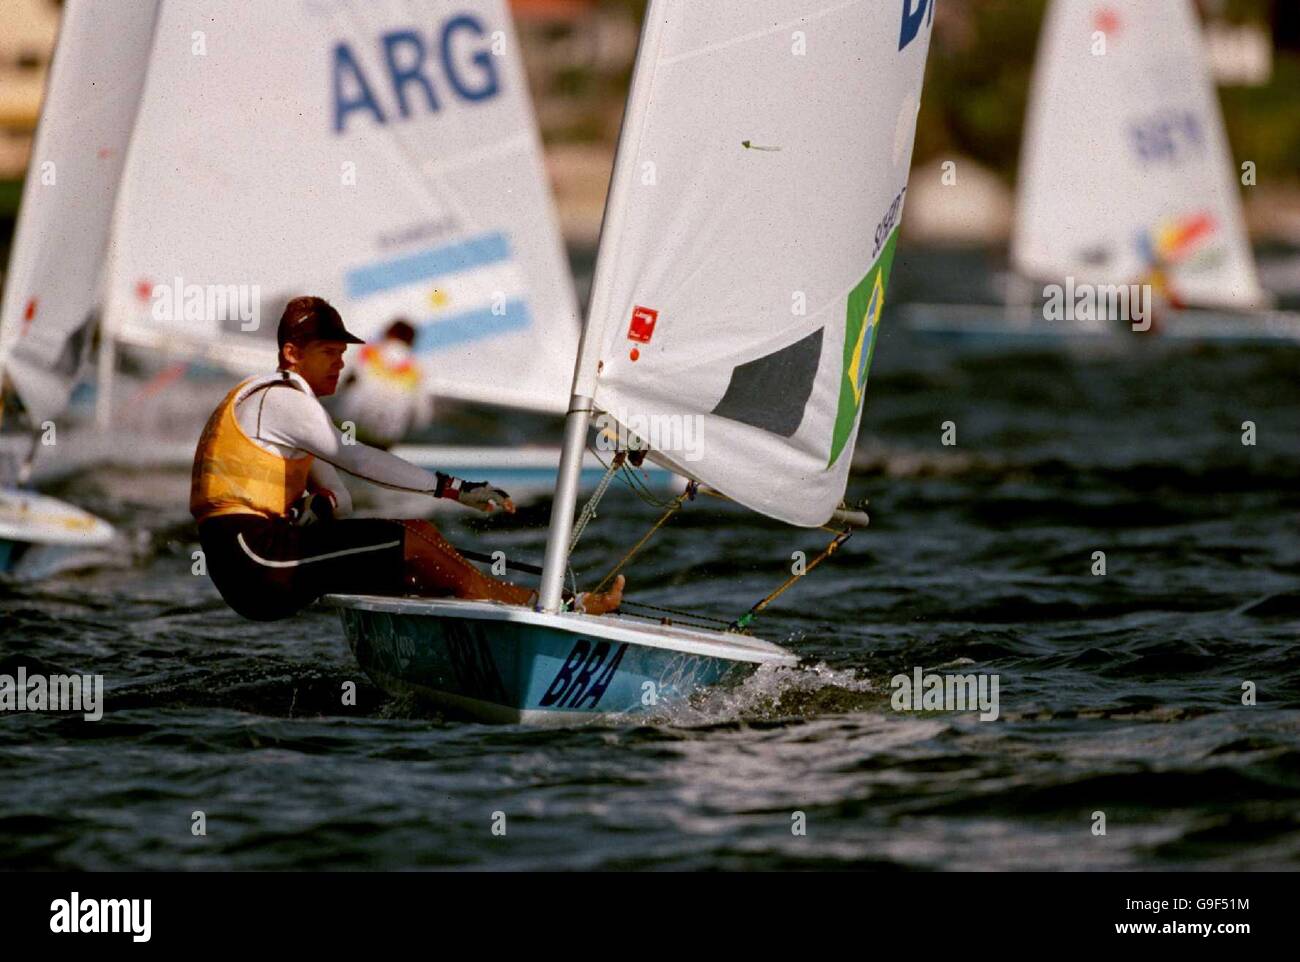 Sydney 2000 Olympic Games - Sailing - Men's Open Laser Fleet Races. Robert Scheidt, Brazil Stock Photo